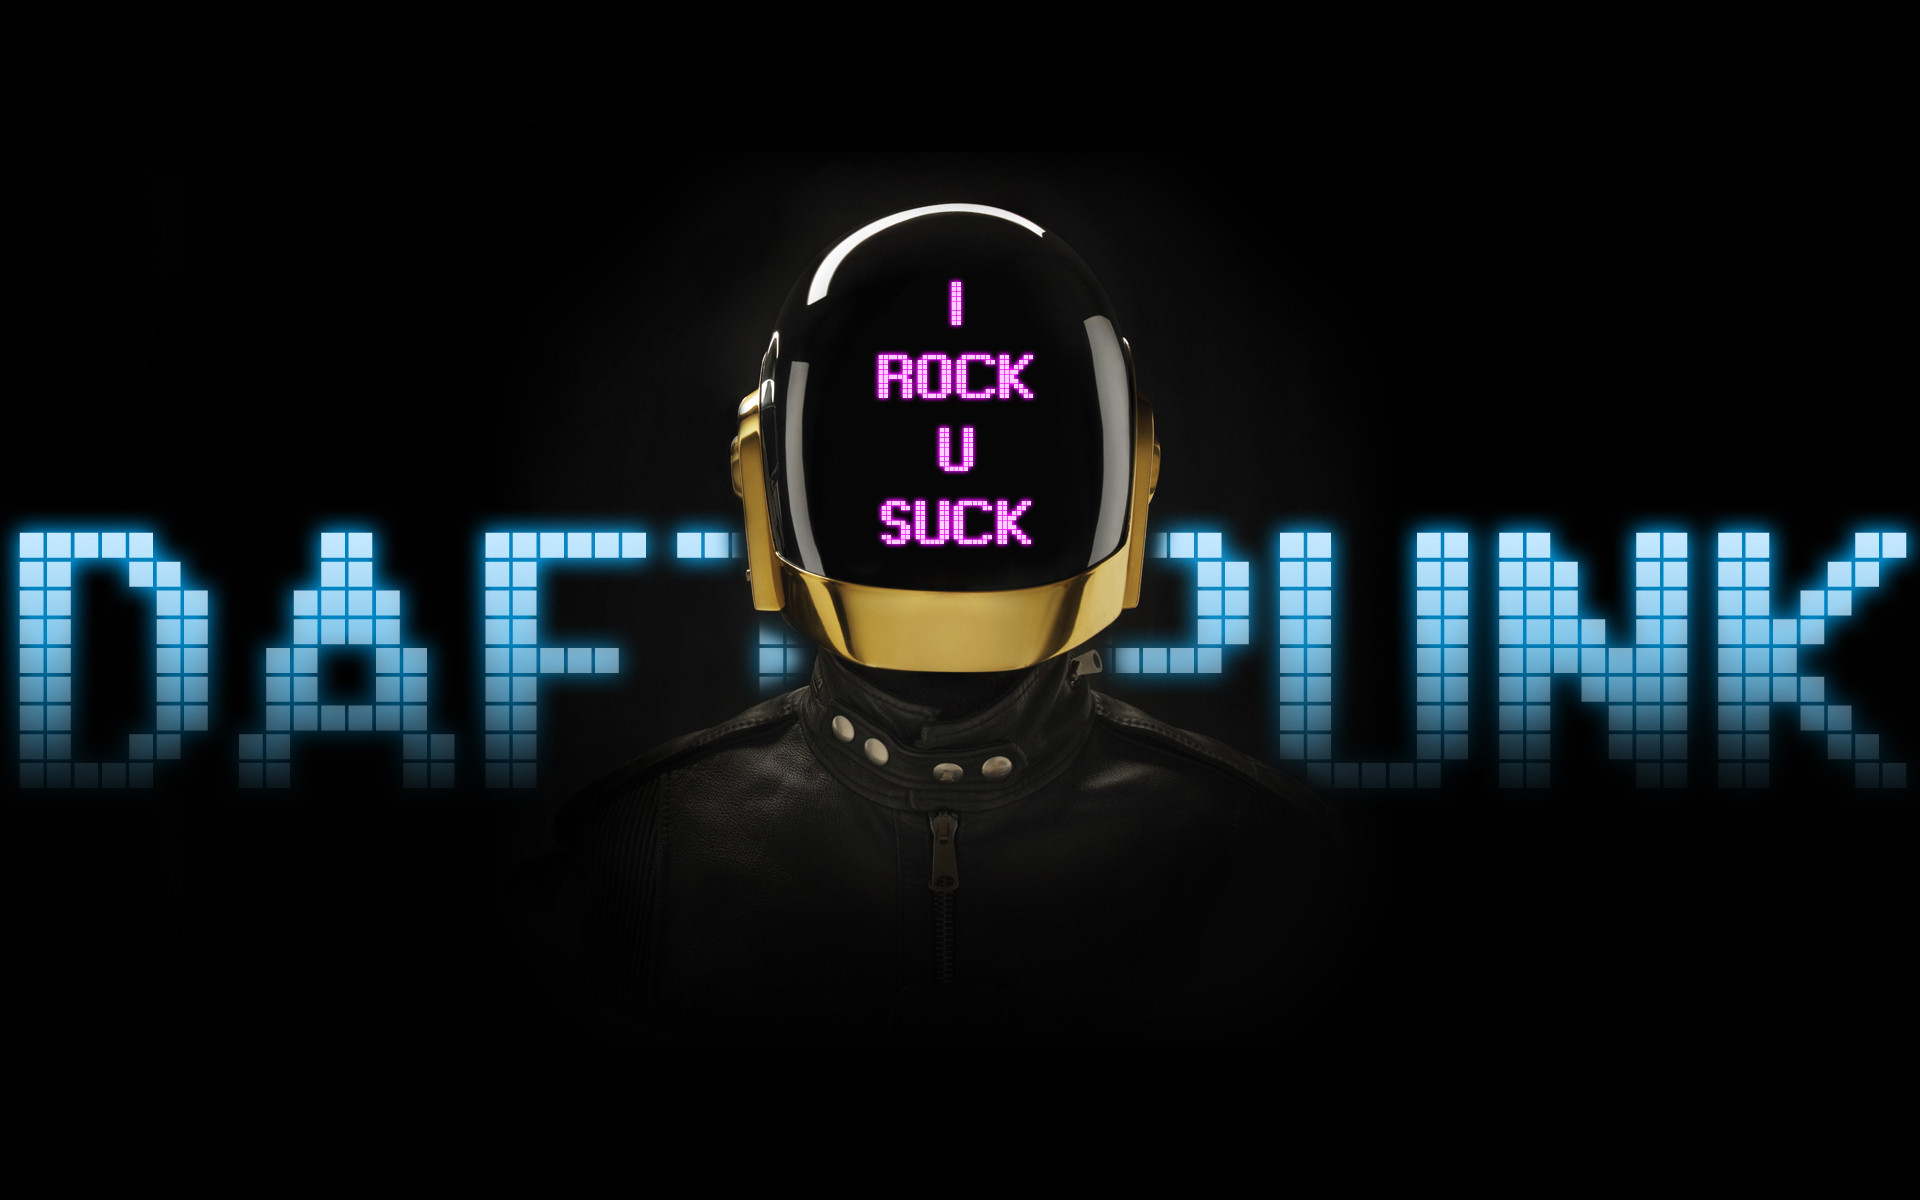 I Rock U Suck - Daft Punk Dj Hero - HD Wallpaper 